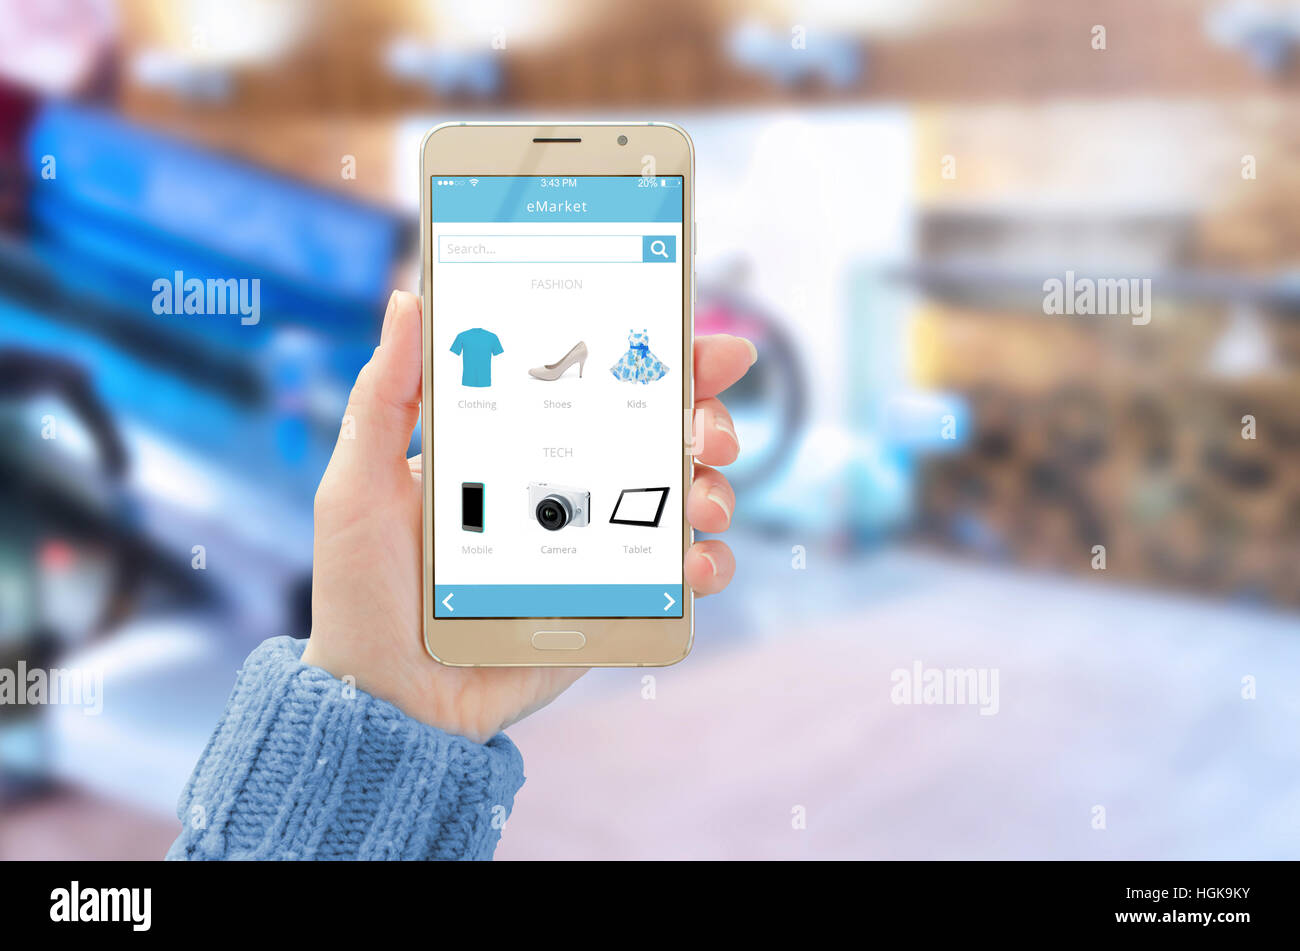 Handy mit Online-Shop app auf Handy in der Hand der Frau anzeigen Einkaufszentrum im Hintergrund. Stockfoto